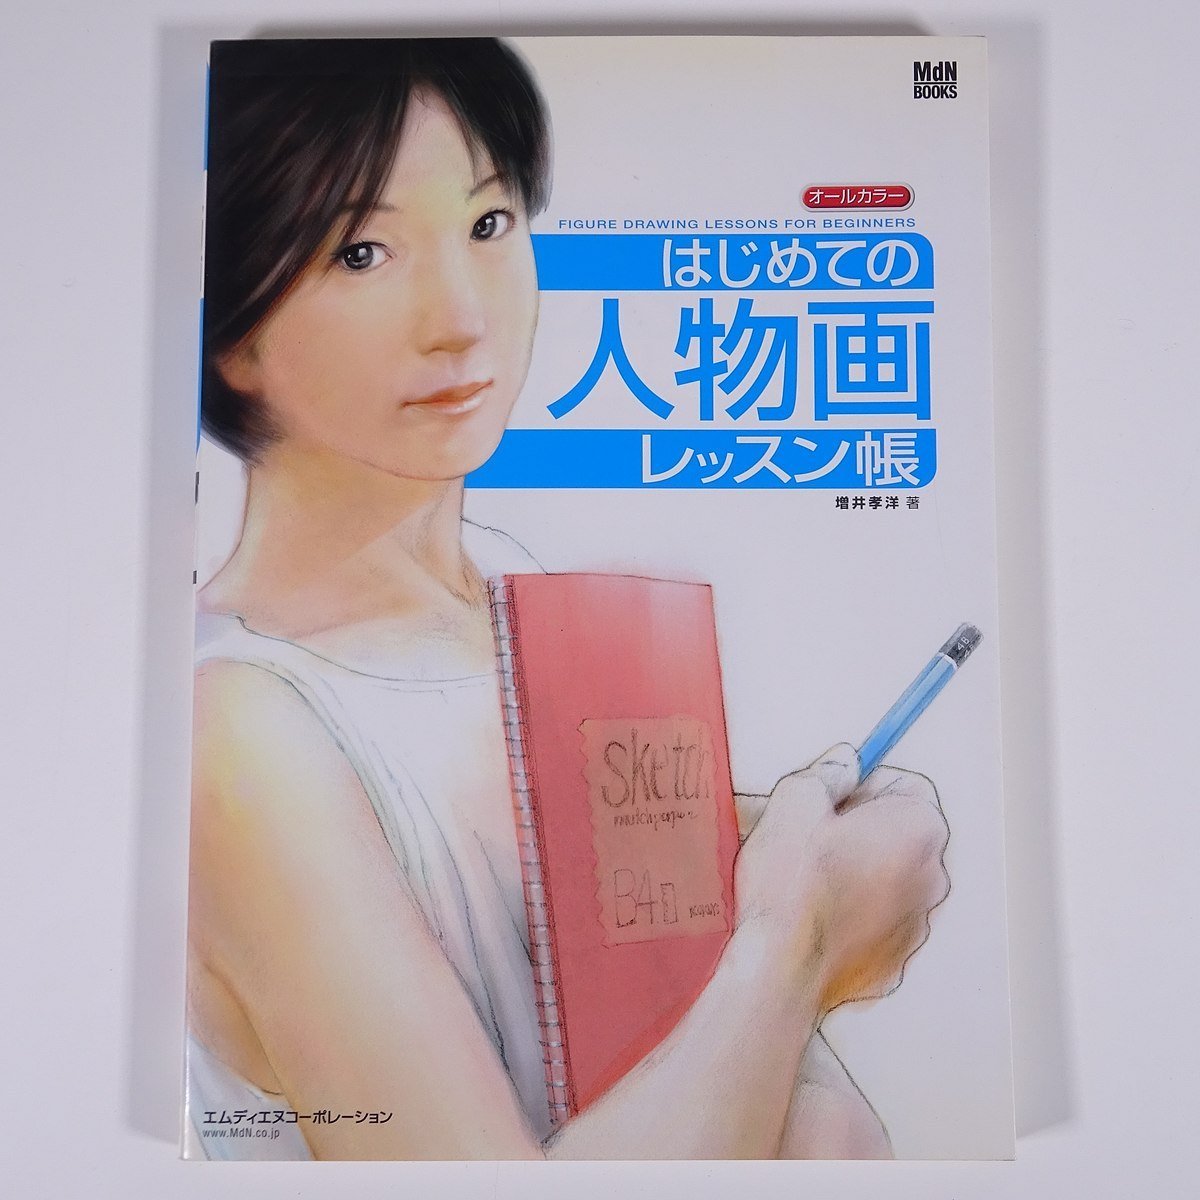 Première leçon de dessin de figures Livre toutes couleurs Takahiro Masui MdN 2003 Grand livre Art Peinture Illustration Dessin Technique Livre, art, divertissement, peinture, Livre technique